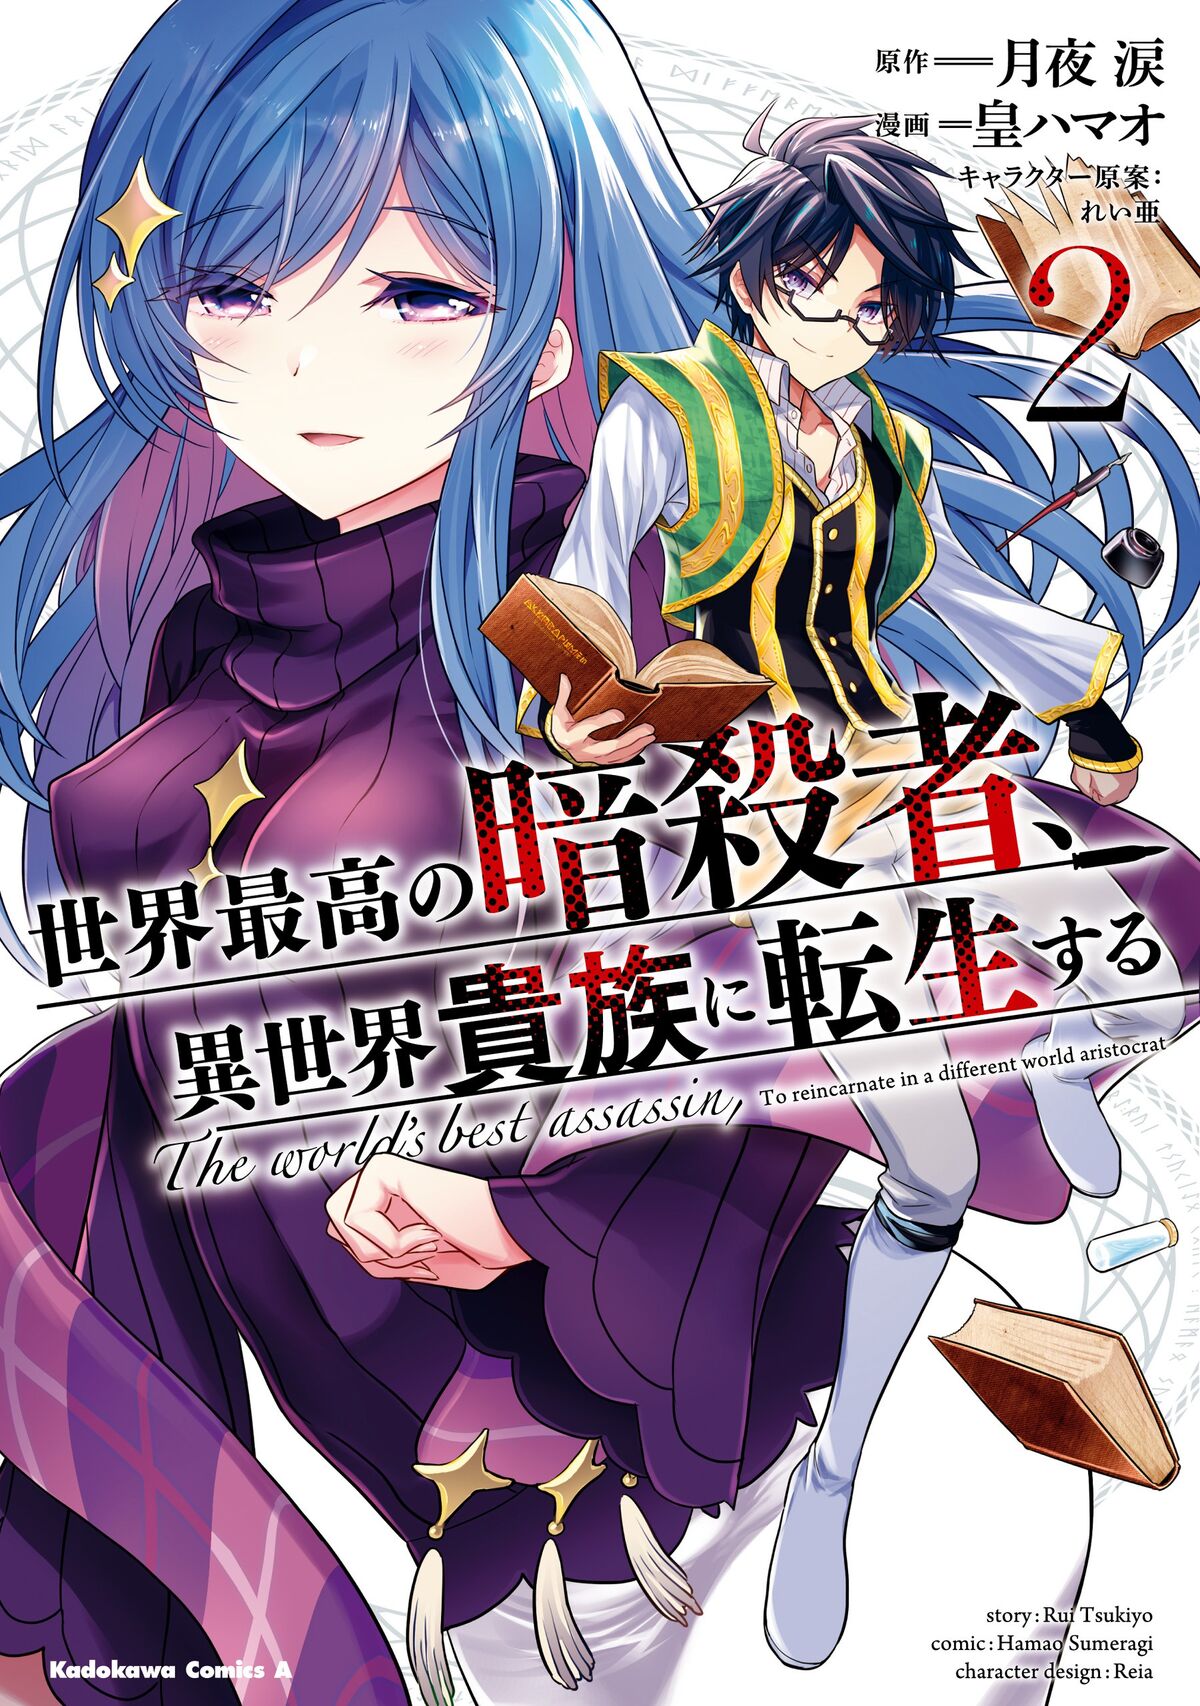 Light Novel Volume 3, The World's Finest Assassin Wiki